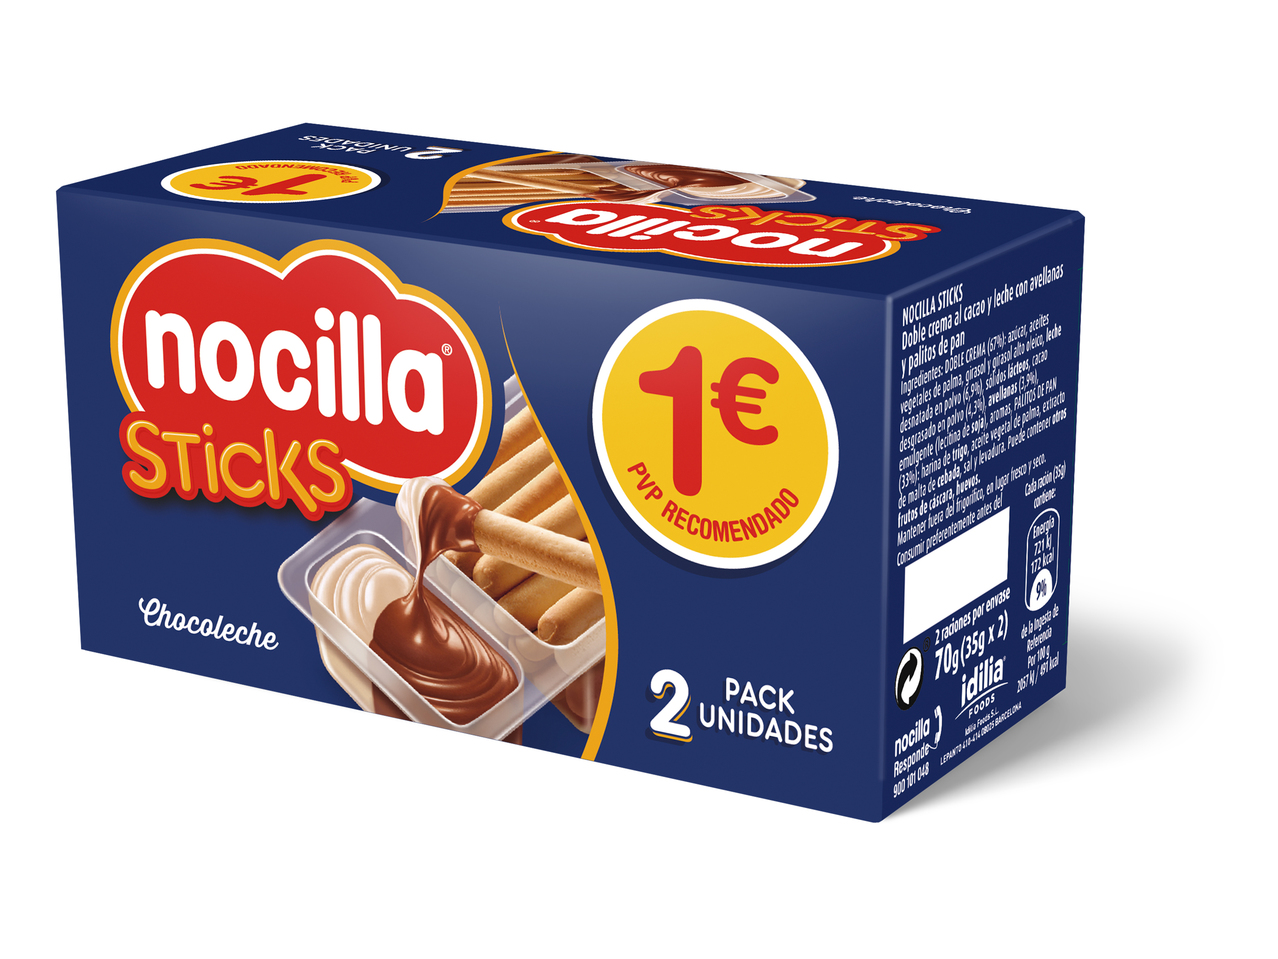 "Nocilla" Nocilla sticks